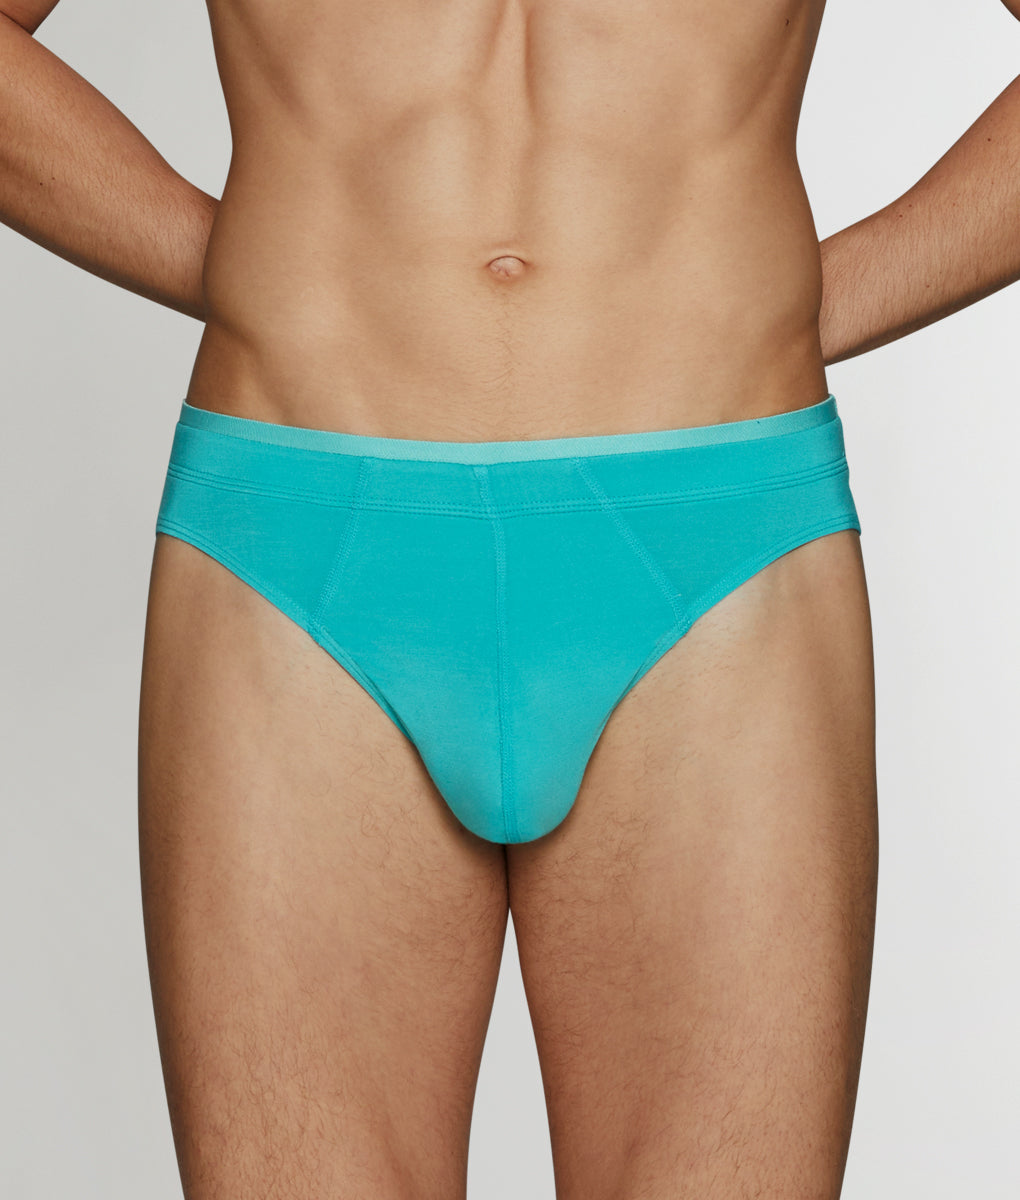 https://www.underwearexpert.com/cdn/shop/files/2xist-Brief-31030-turquoise-f.jpg?v=1695130730